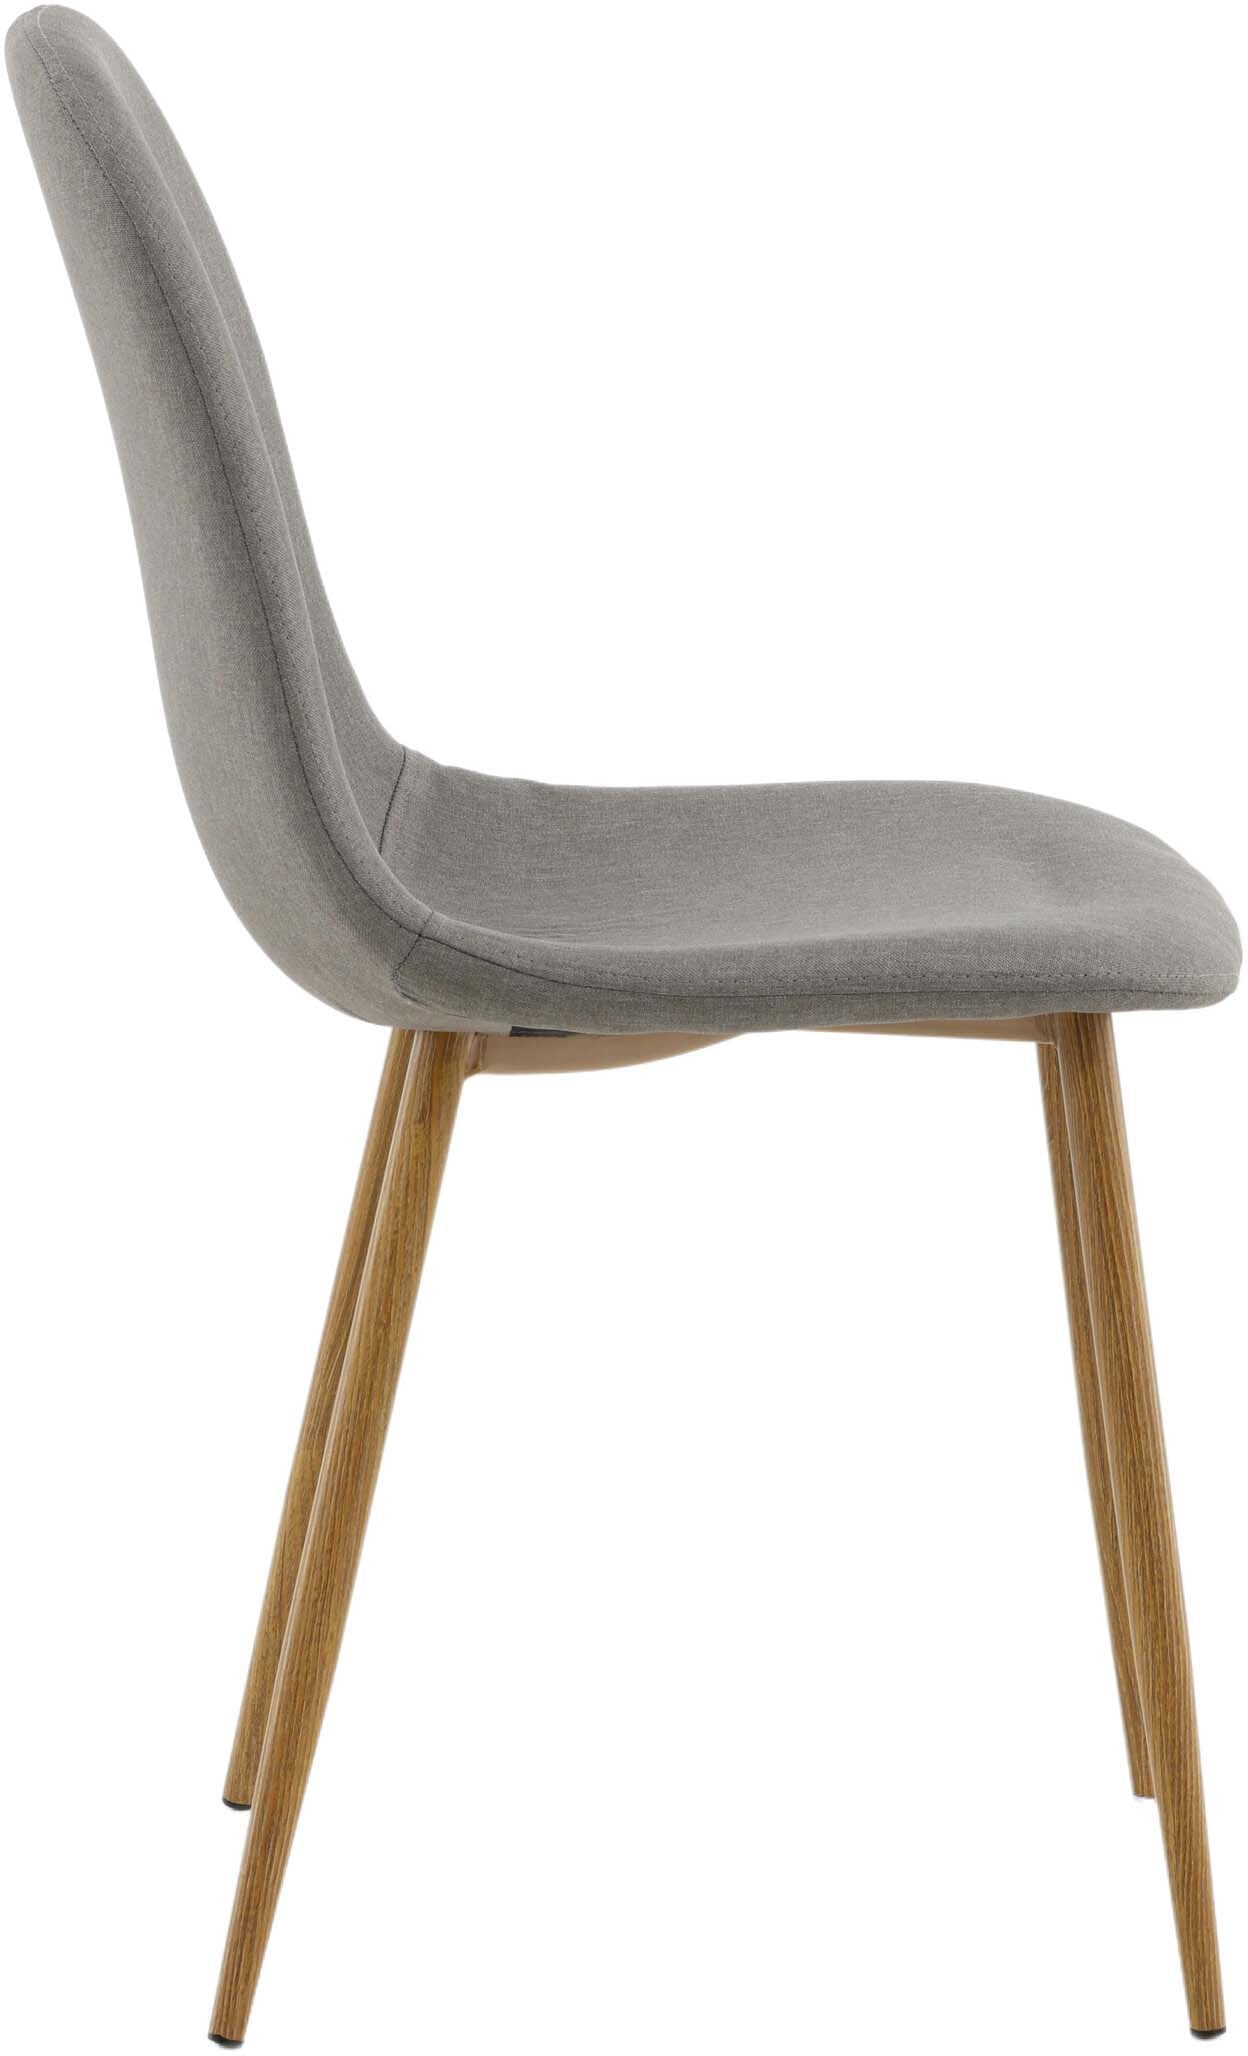 Polar Stuhl in Grau präsentiert im Onlineshop von KAQTU Design AG. Stuhl ist von Venture Home